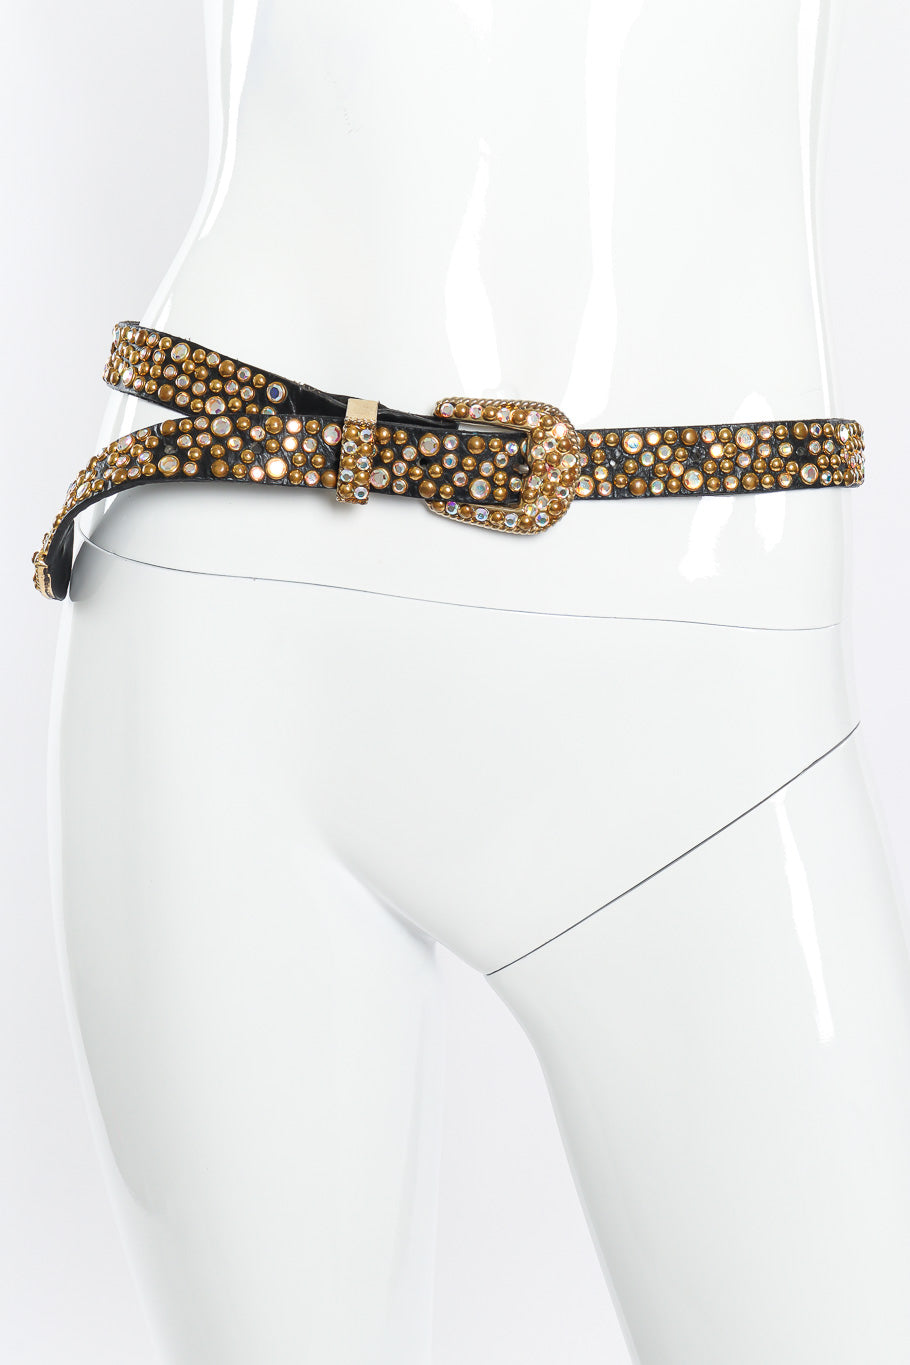 Crystal studded belt on mannequin @recessla